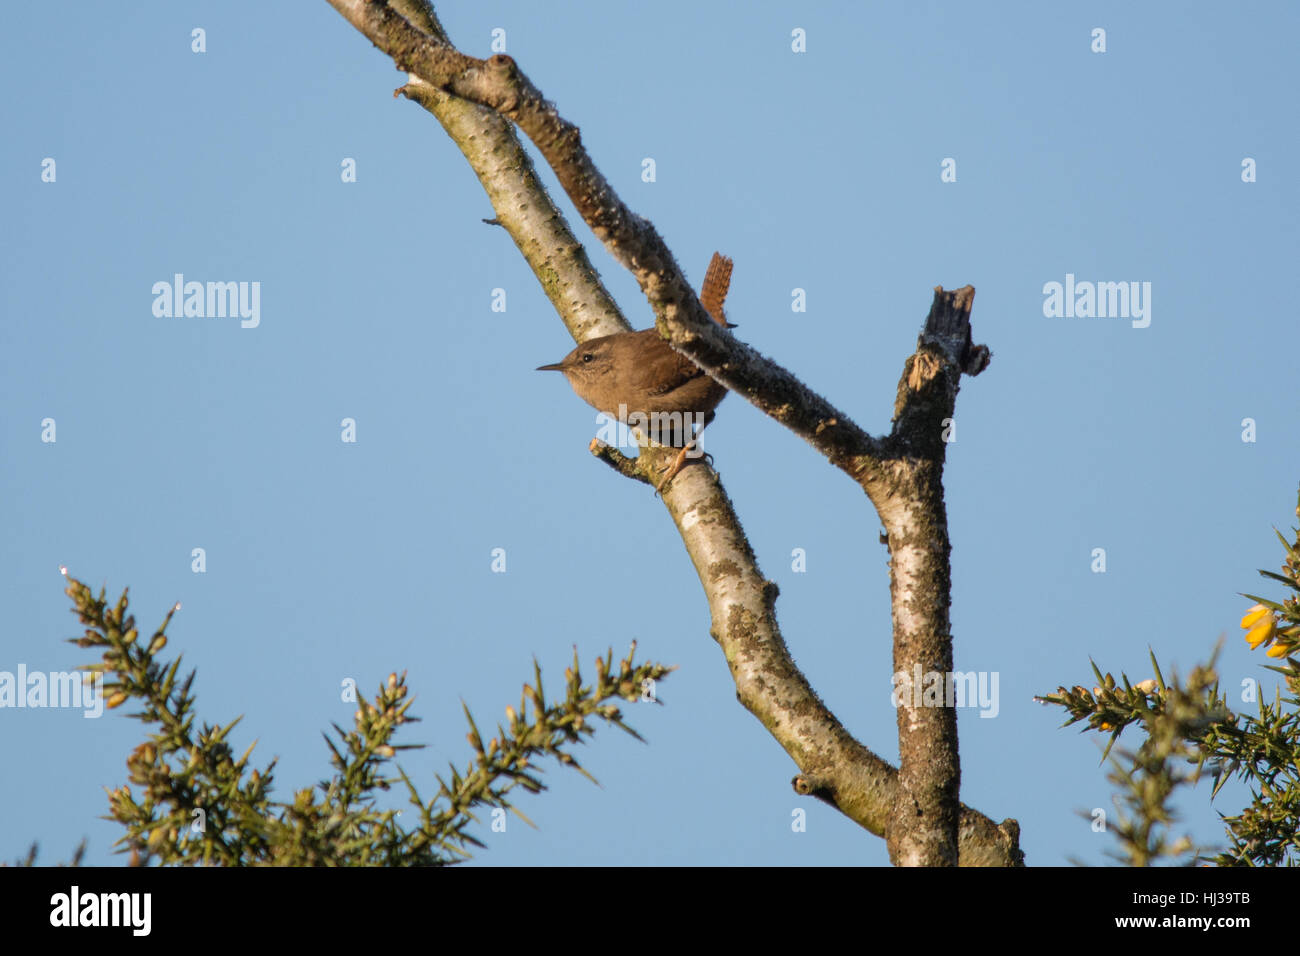 Wren (Troglodytes troglodytes) perched on a twig against blue sky Stock Photo